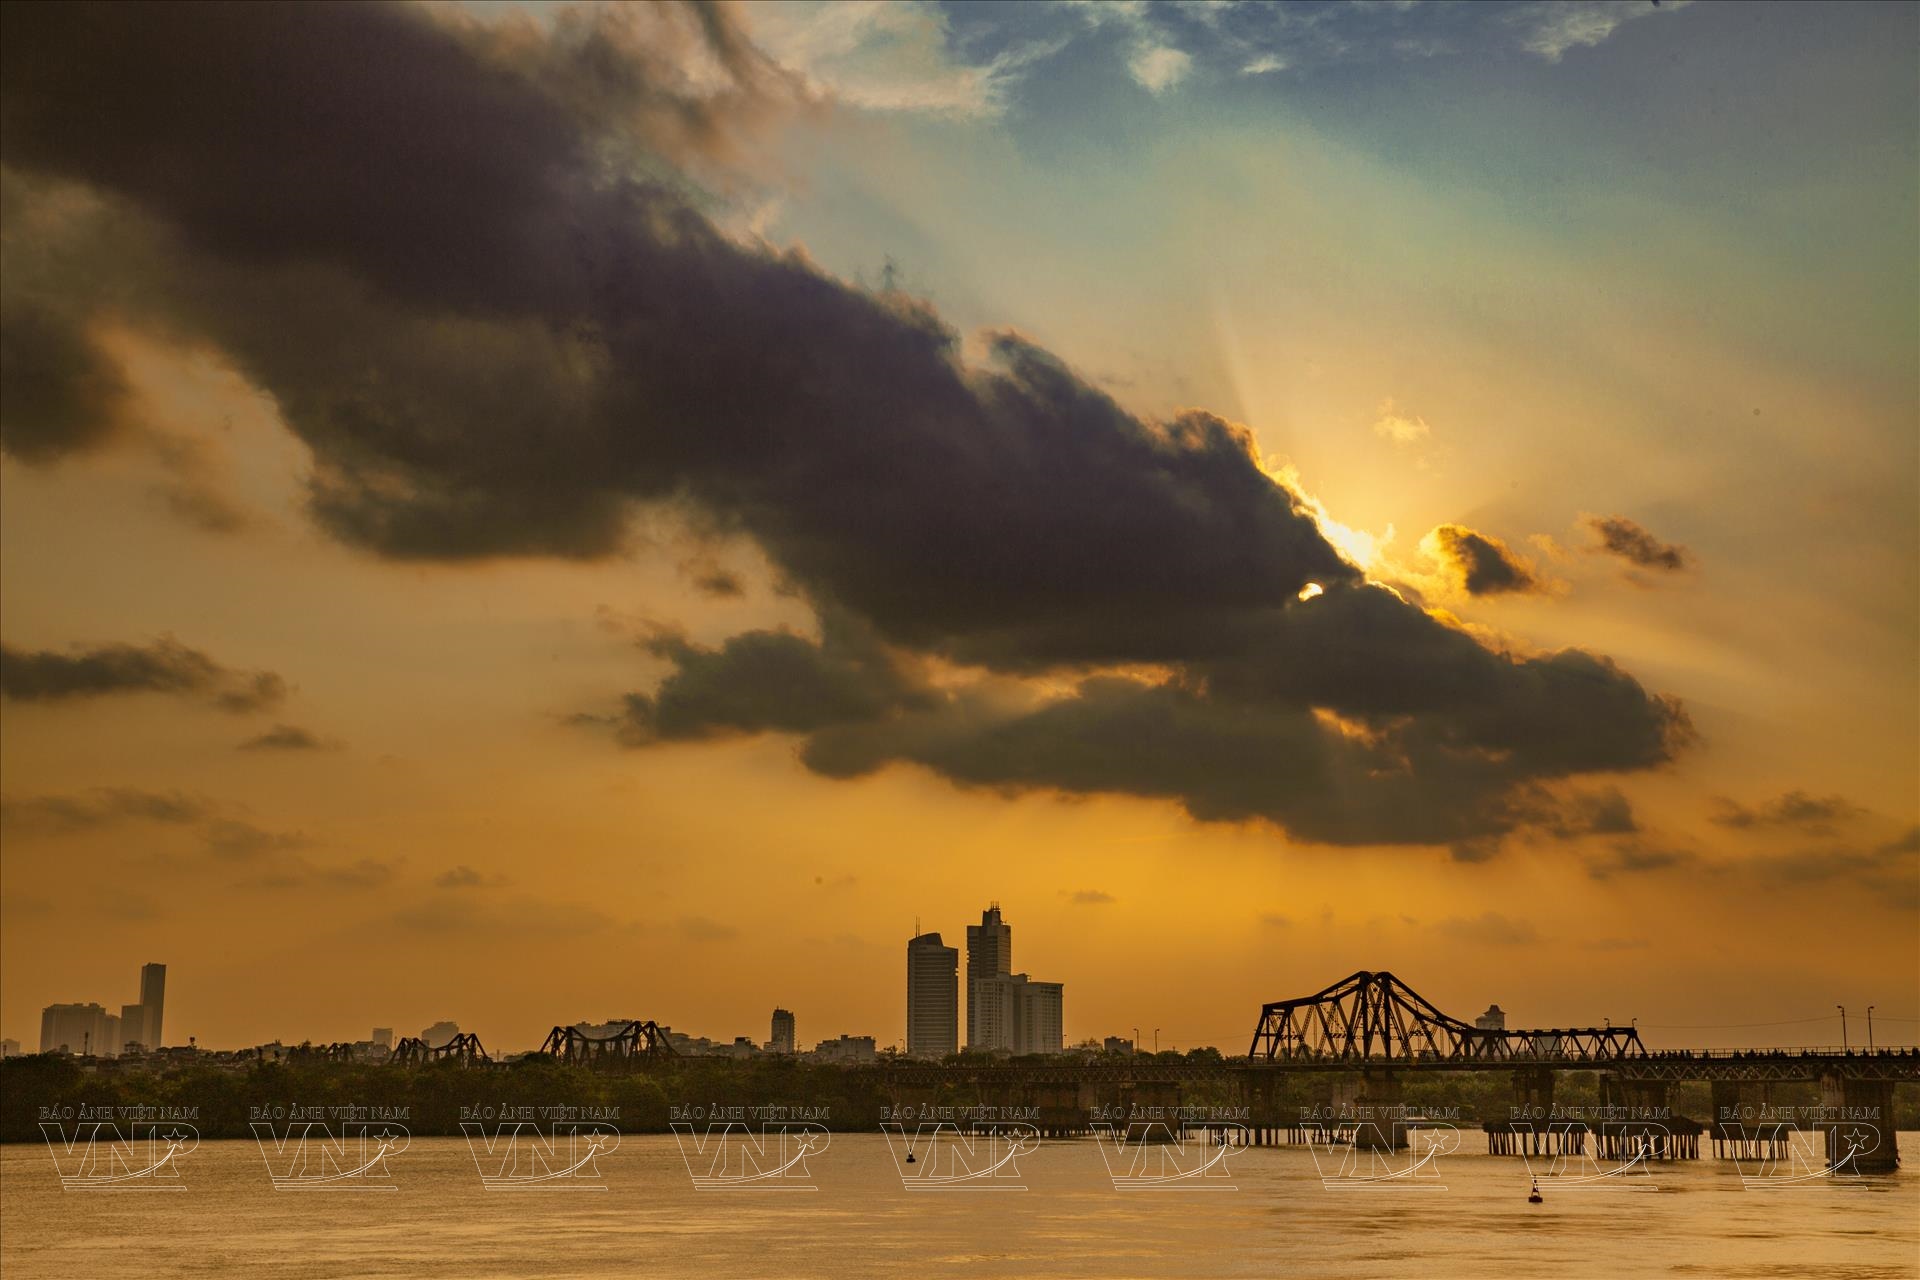 Cầu Long Biên là một trong những biểu tượng lịch sử và văn hoá của thành phố Hà Nội. Hình ảnh liên quan đến cầu sẽ khiến bạn không muốn bỏ lỡ cơ hội thả mình trên đường cầu và ngắm nhìn toàn cảnh phố cổ và sông Hồng tuyệt đẹp của Hà Nội.